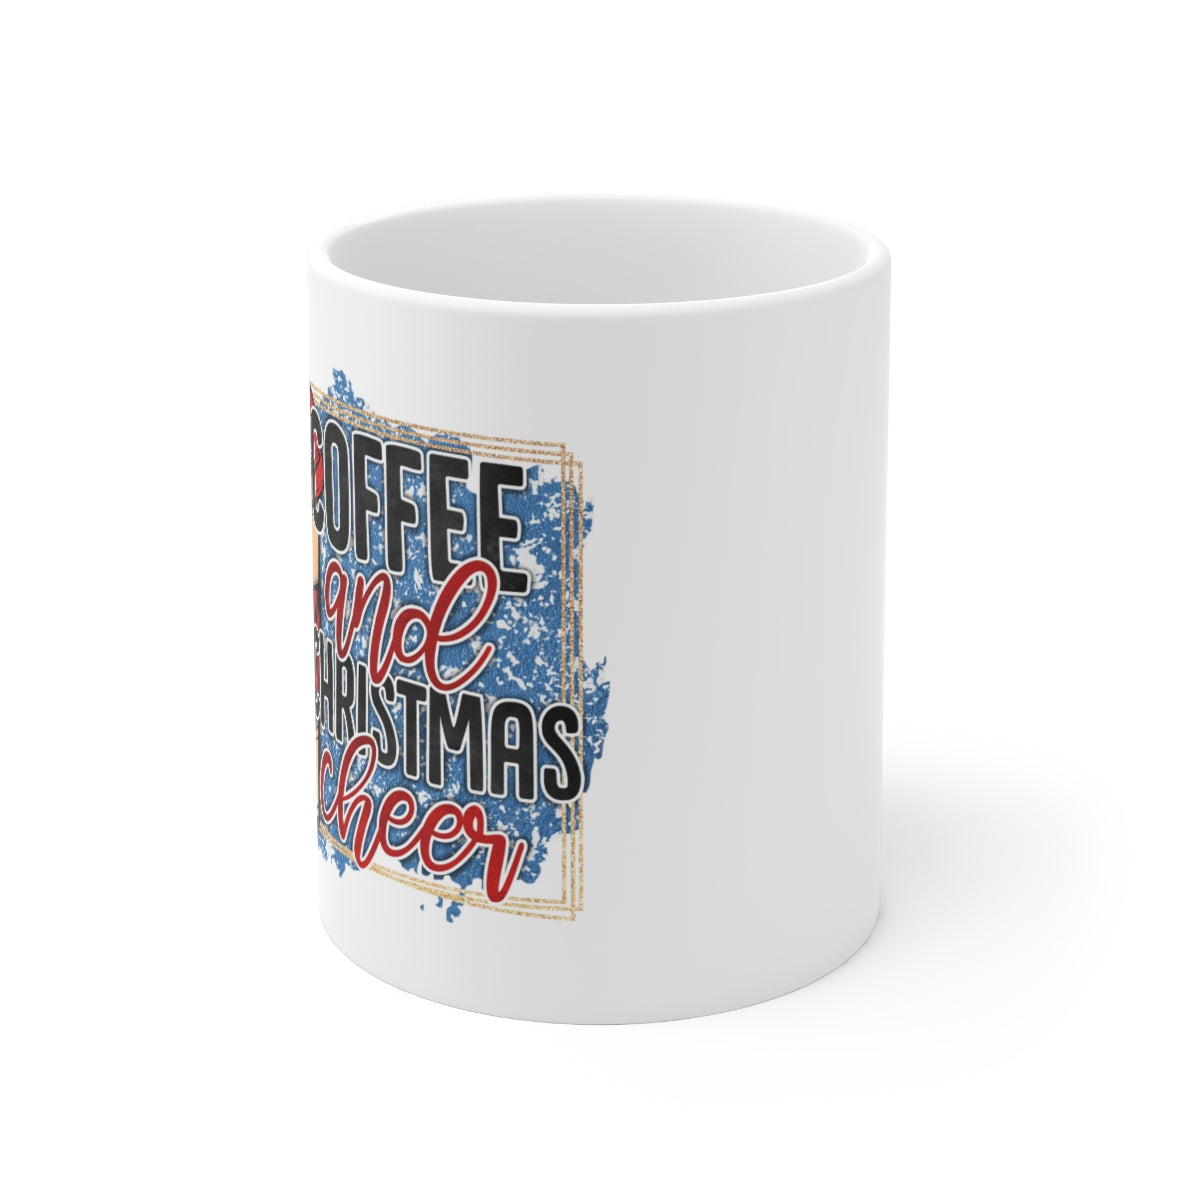 Coffee and Christmas Cheer - Ceramic Mug 11oz